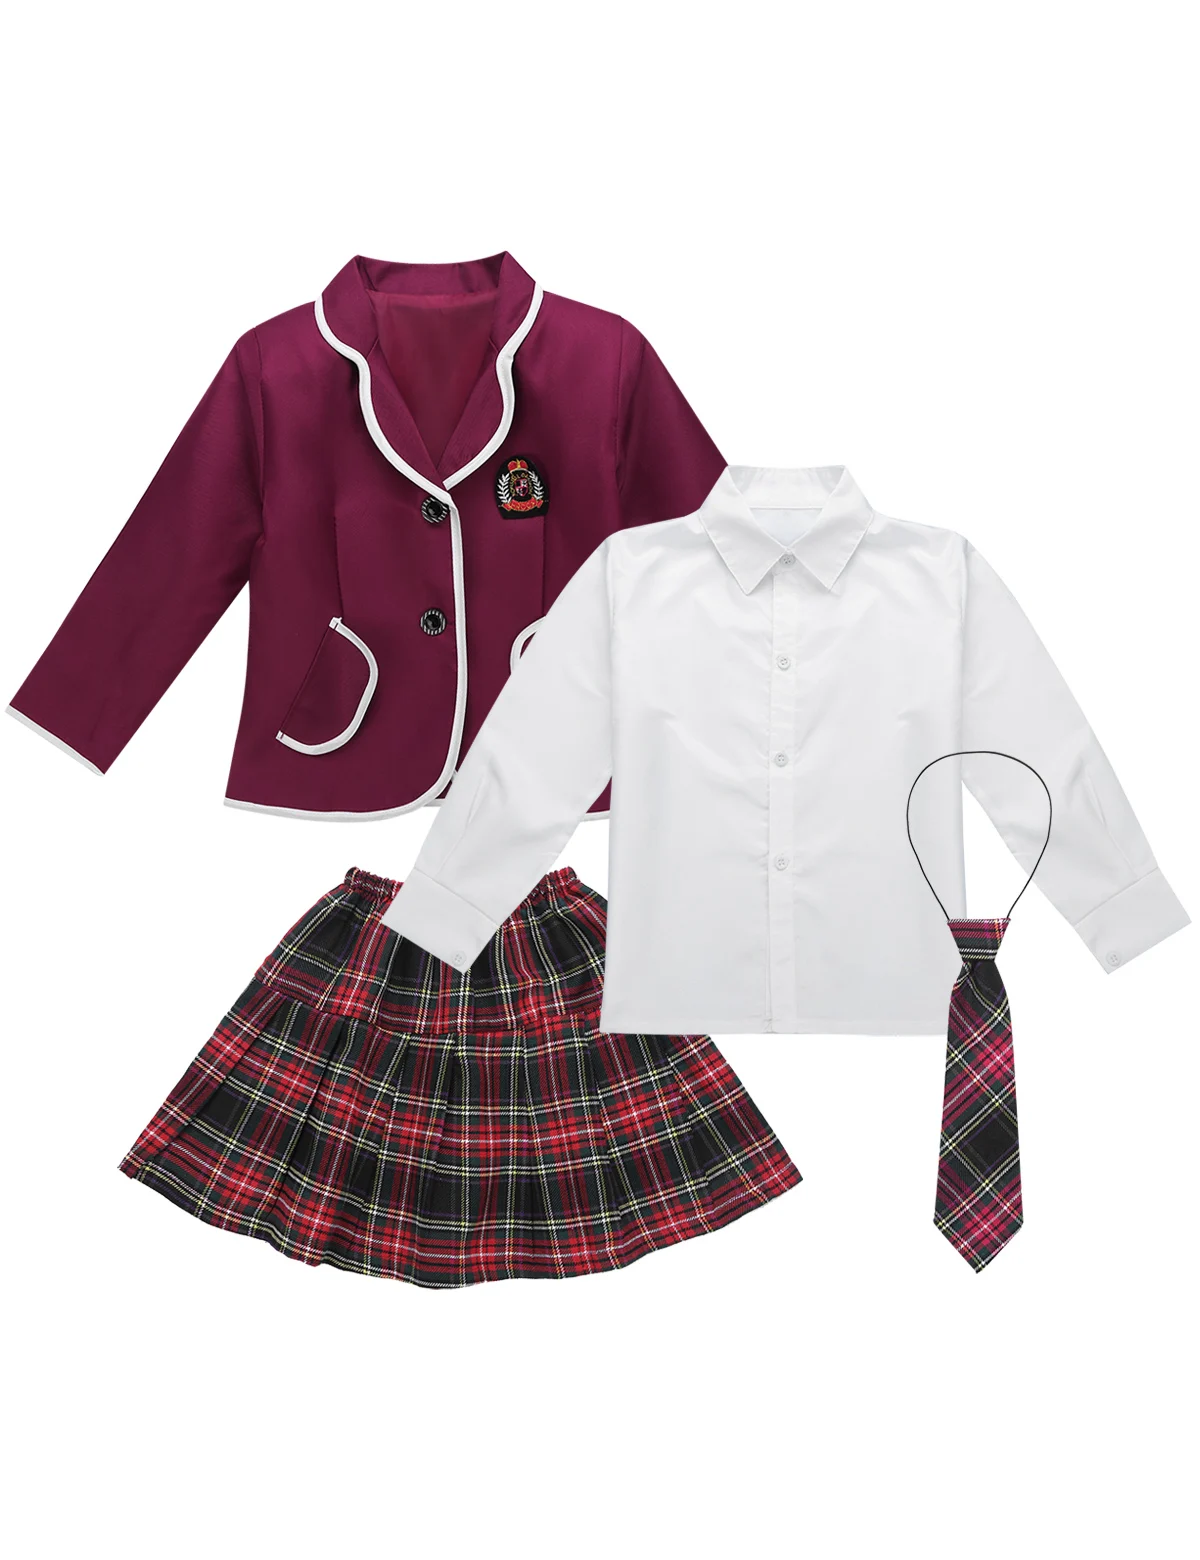 Детская школьная форма в британском стиле для девочек, Студенческие костюмы из японского аниме, костюм, пальто и рубашка с отложным воротником галстук, мини-юбка, одежда